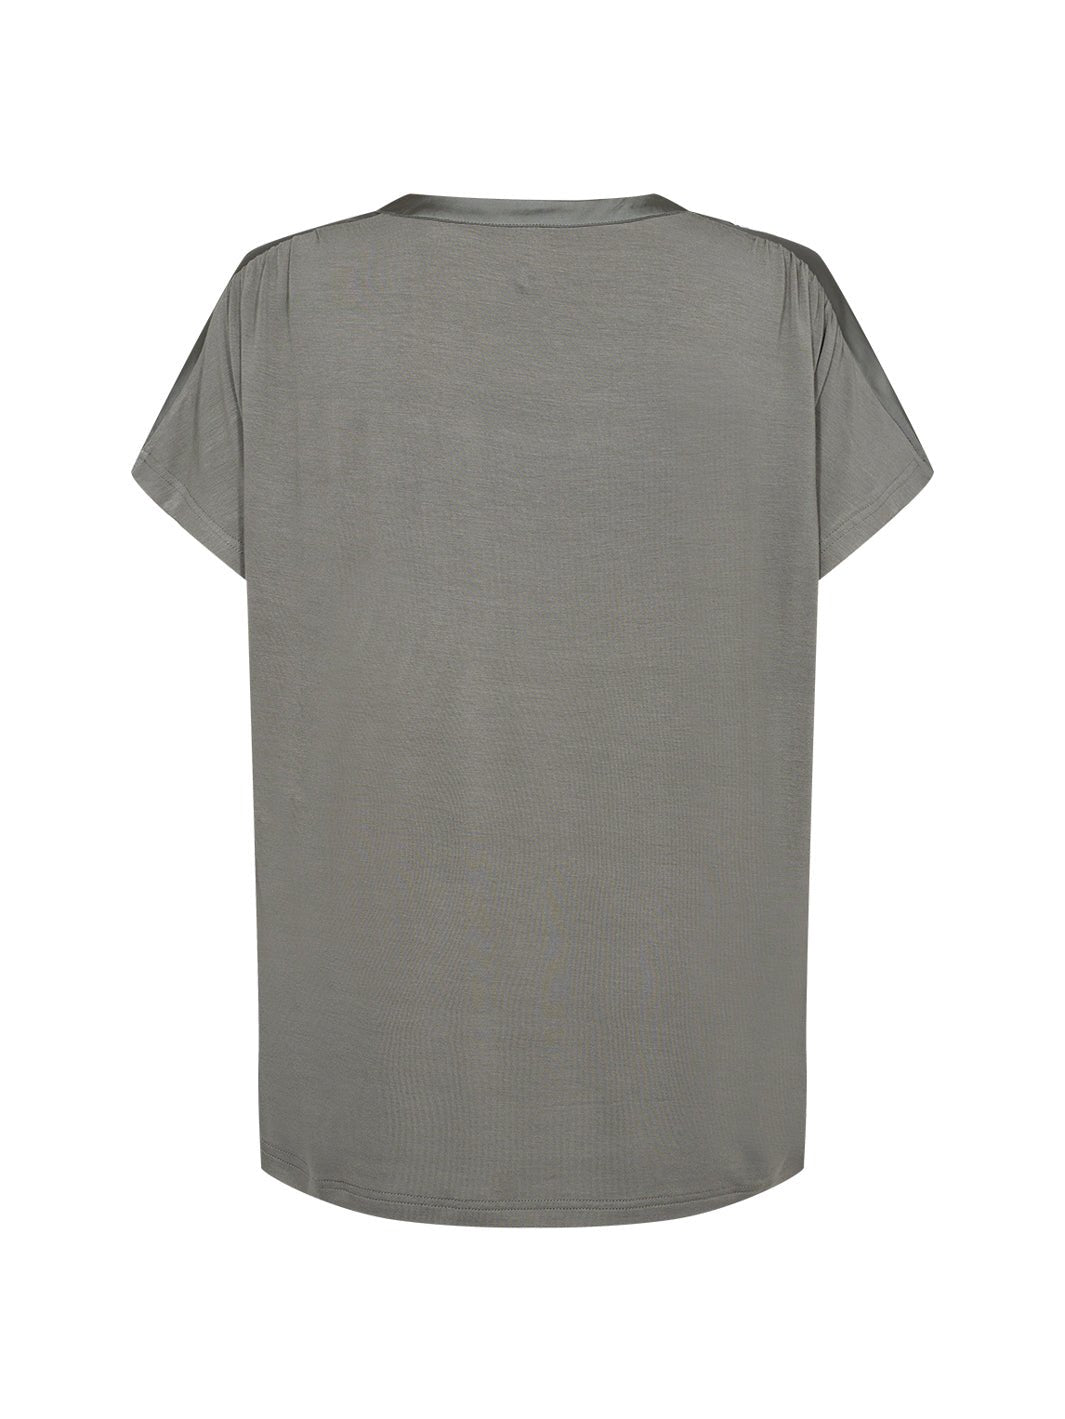 Soya Concept Thilde 49 t-shirt olive - Online-Mode